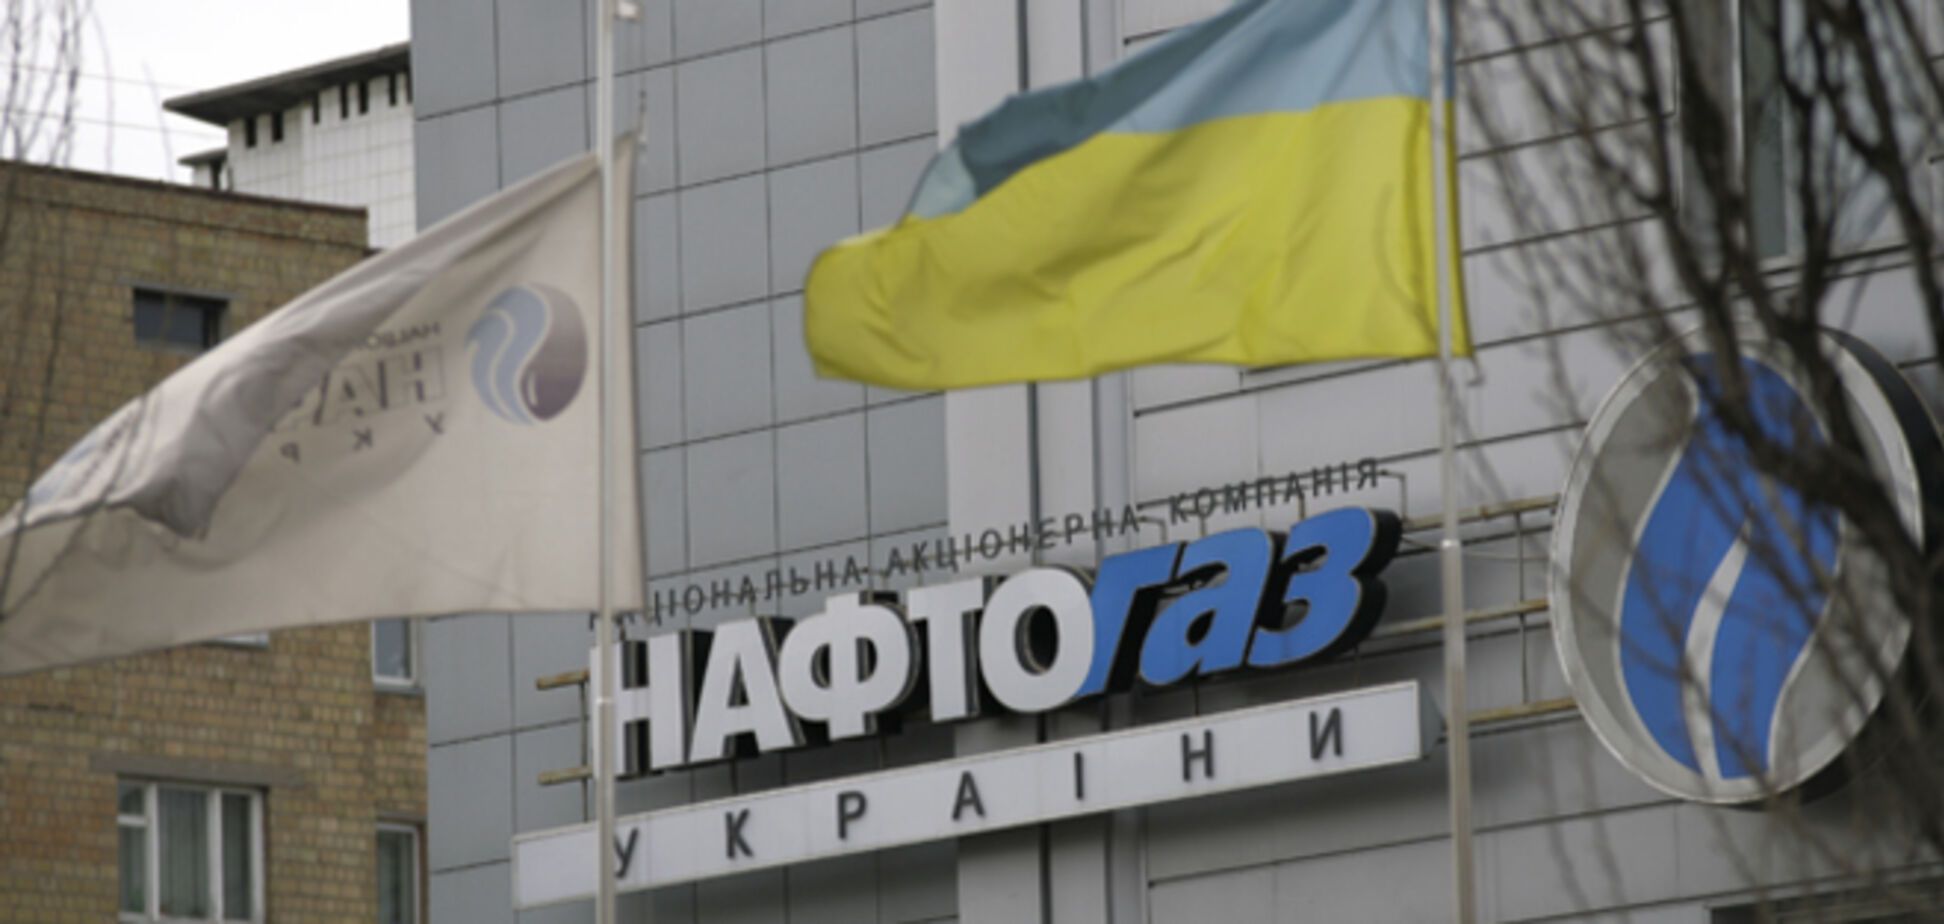 'Нафтогаз Украины' собрался судиться за крымские активы